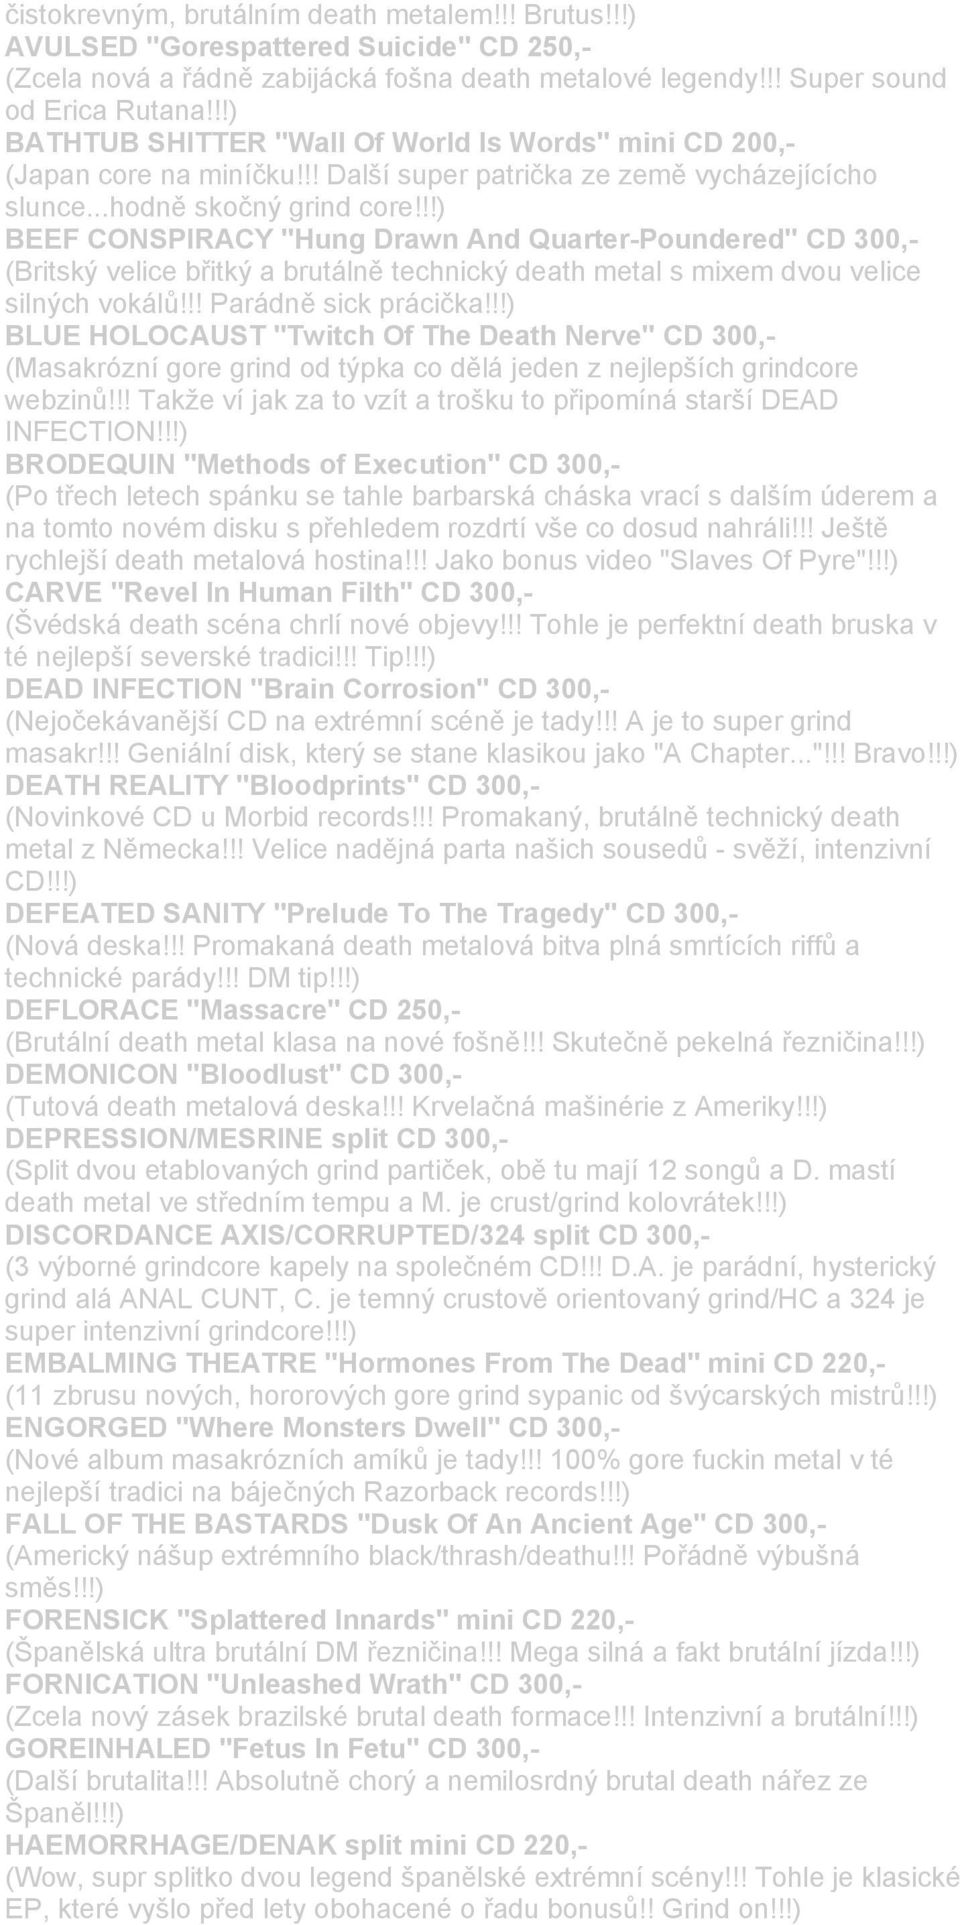 !!) BEEF CONSPIRACY "Hung Drawn And Quarter-Poundered" CD 300,- (Britský velice břitký a brutálně technický death metal s mixem dvou velice silných vokálů!!! Parádně sick prácička!